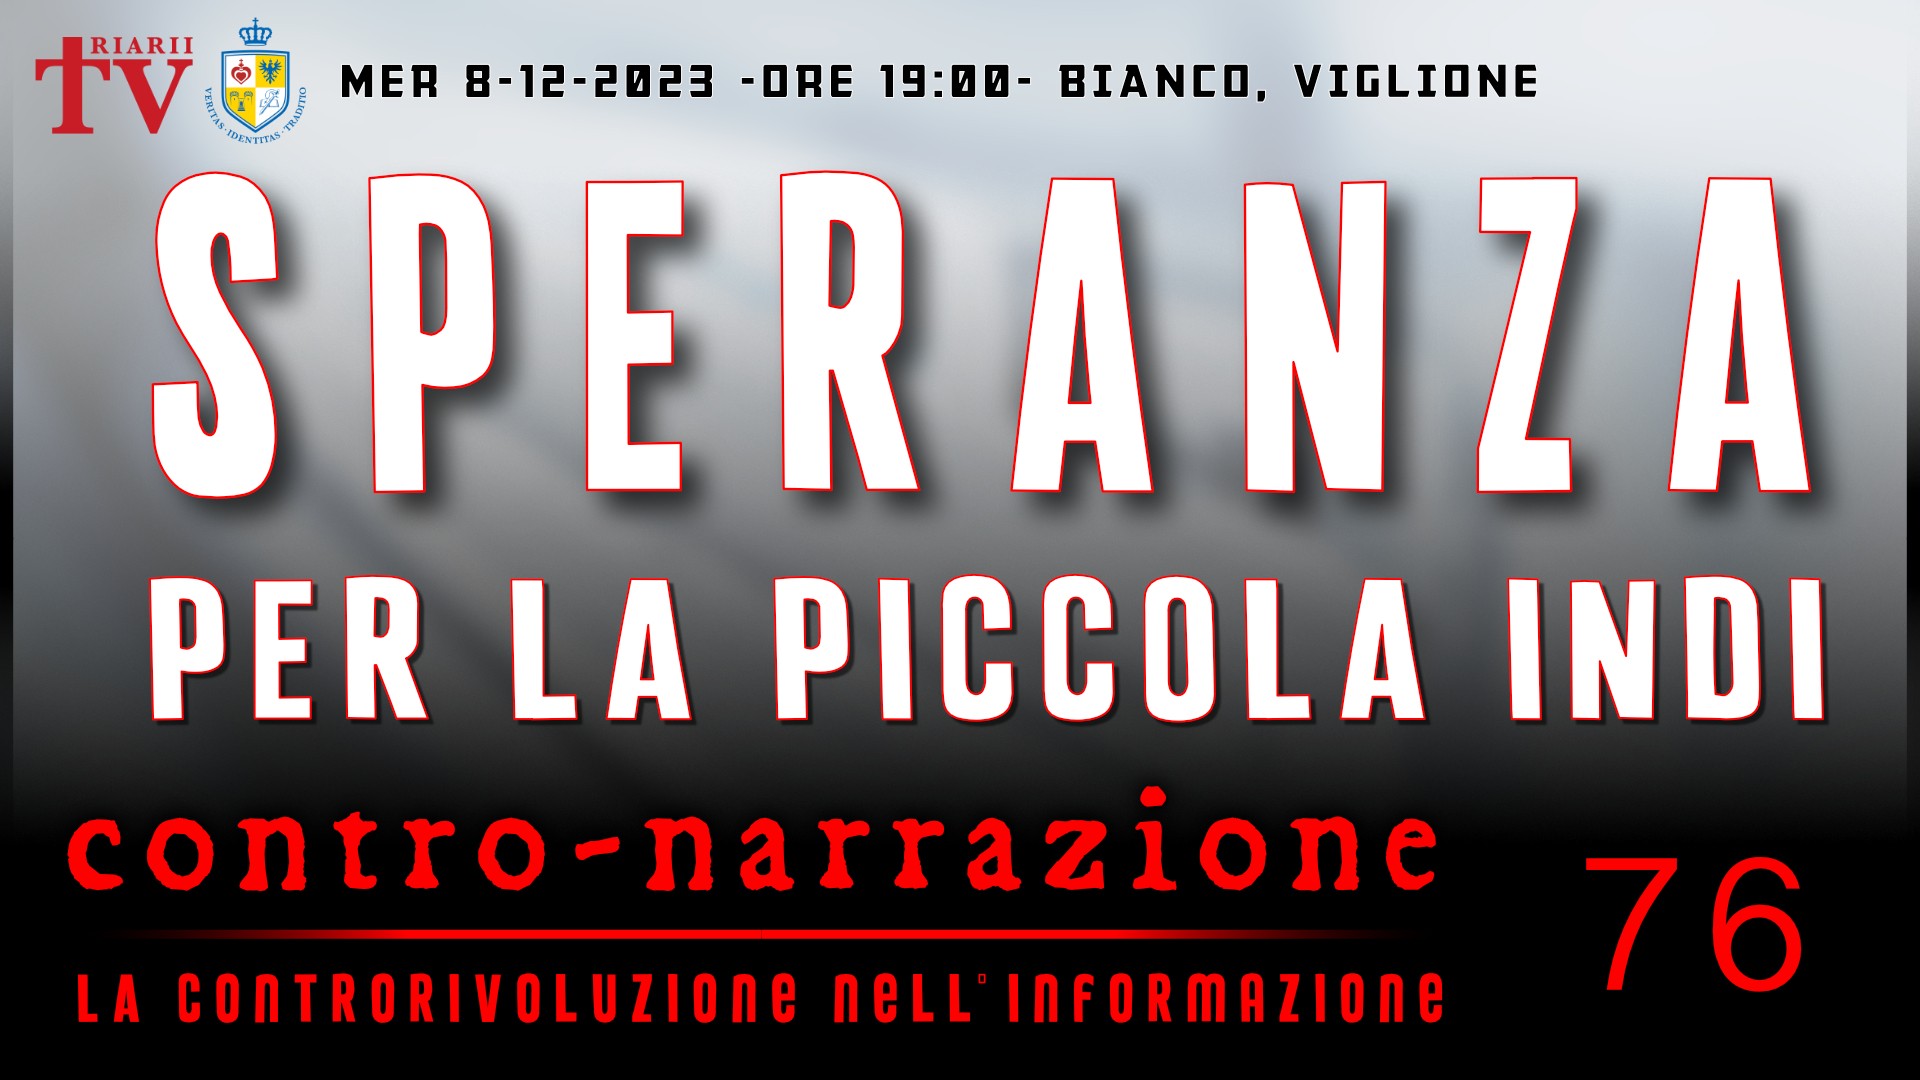 CONTRO-NARRAZIONE NR.76 - MERC 8 NOVEMBRE 2023 - Antonio Bianco, Massimo Viglione